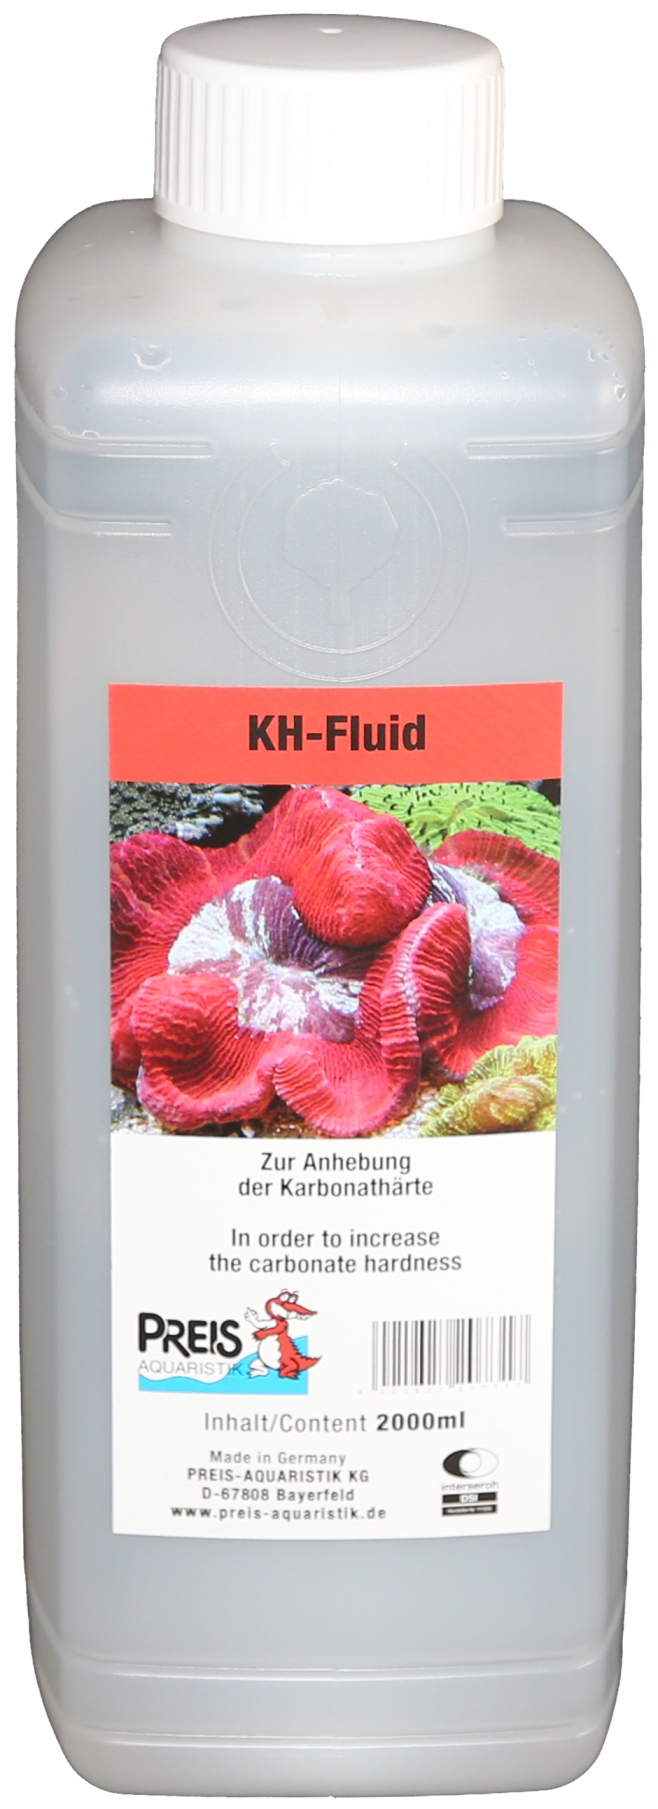 Preis KH-Fluid 2000ml 